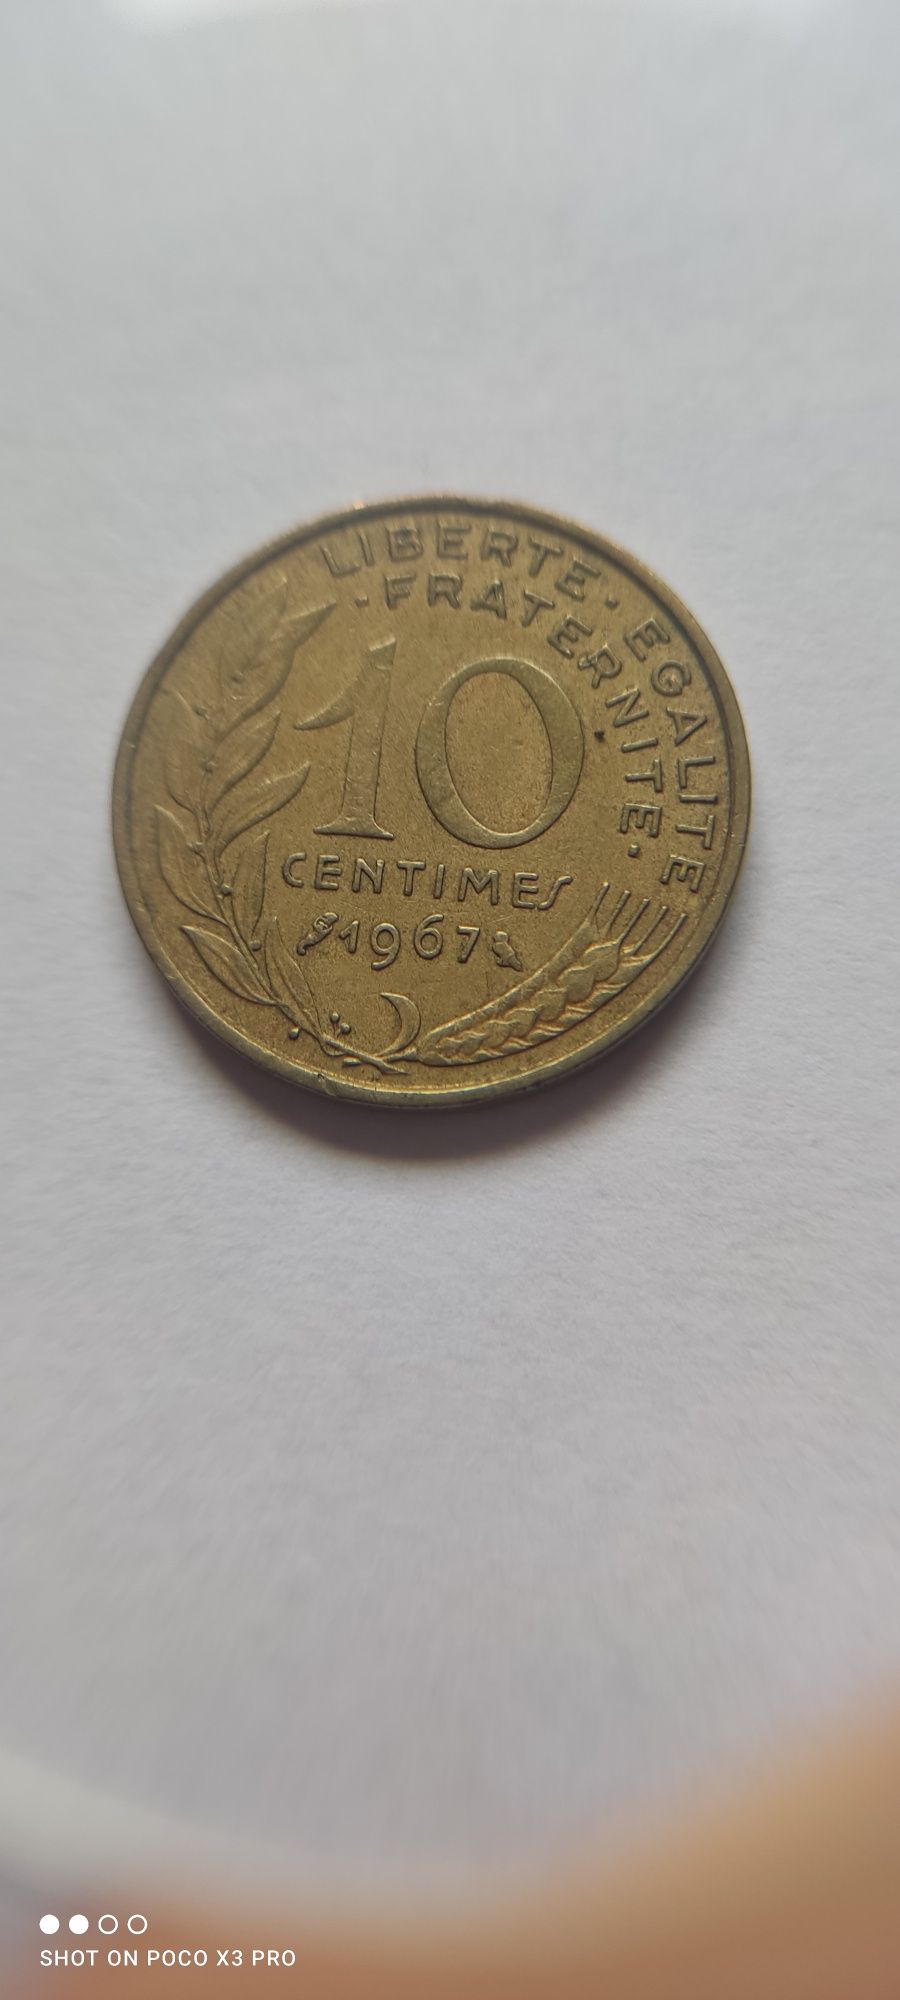 Moneta 10,20,20 Centimes 1967, 1975,1985